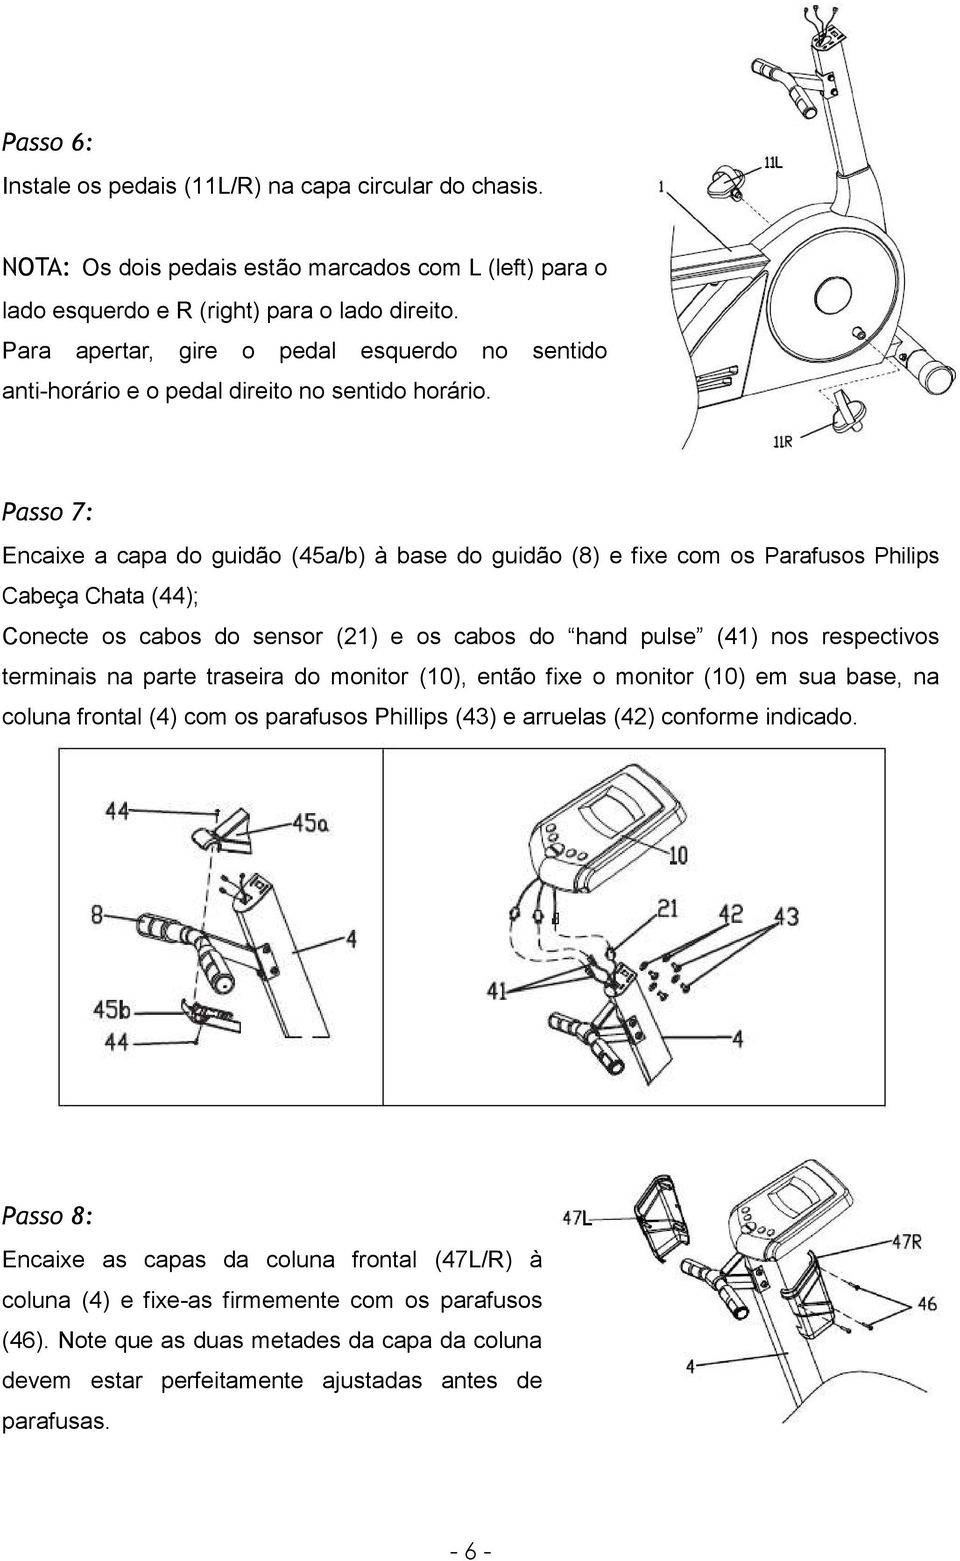 Passo 7: Encaixe a capa do guidão (45a/b) à base do guidão (8) e fixe com os Parafusos Philips Cabeça Chata (44); Conecte os cabos do sensor (21) e os cabos do hand pulse (41) nos respectivos